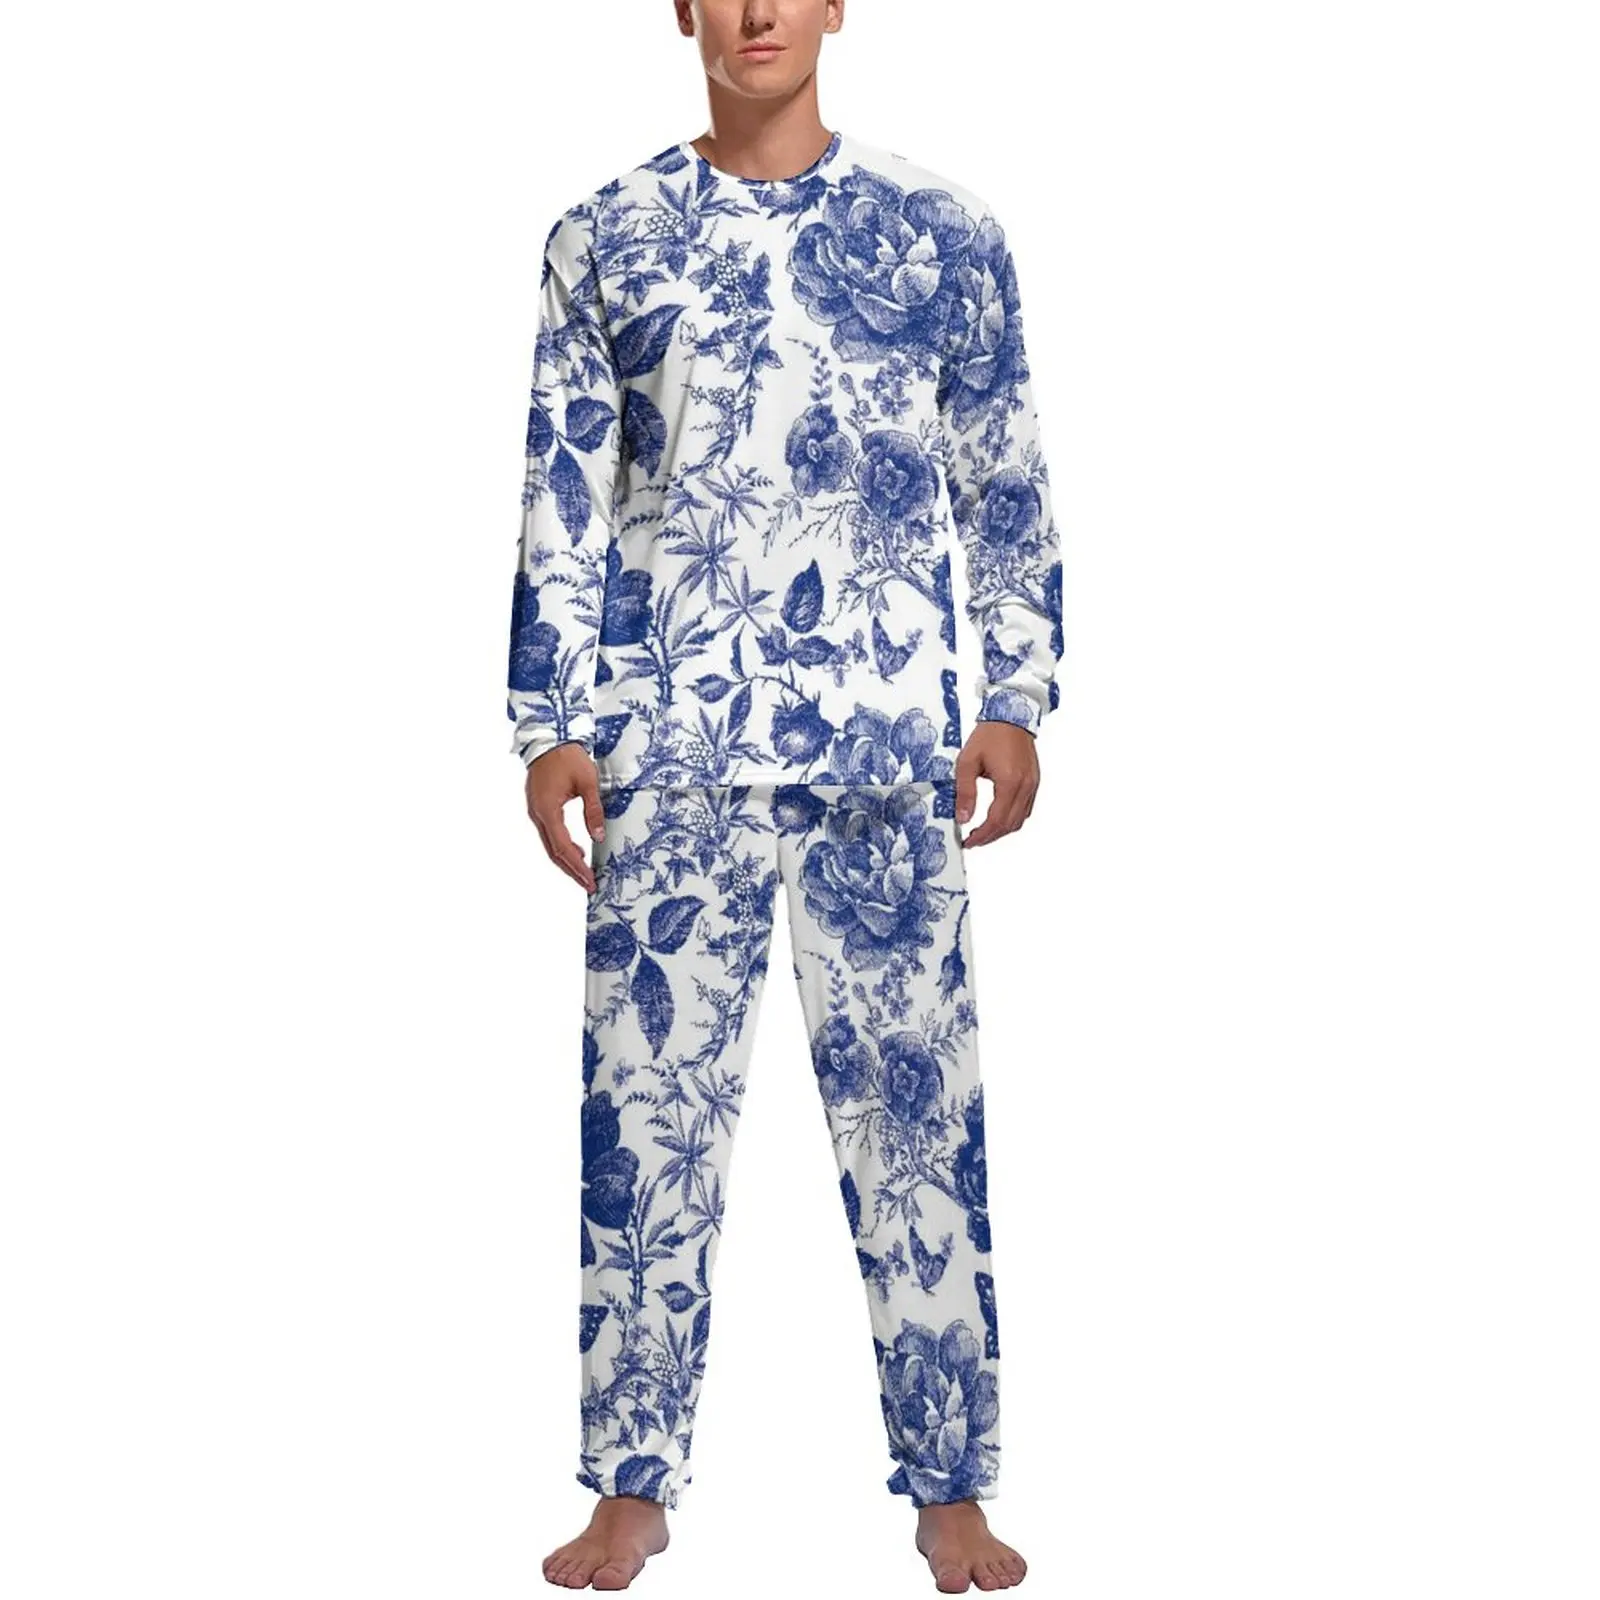 

Пижама-бабочка винтажные мужские пижамные комплекты с длинным рукавом и синими цветами, 2 предмета, Повседневная осенняя одежда для сна с графическим рисунком, идея для подарка